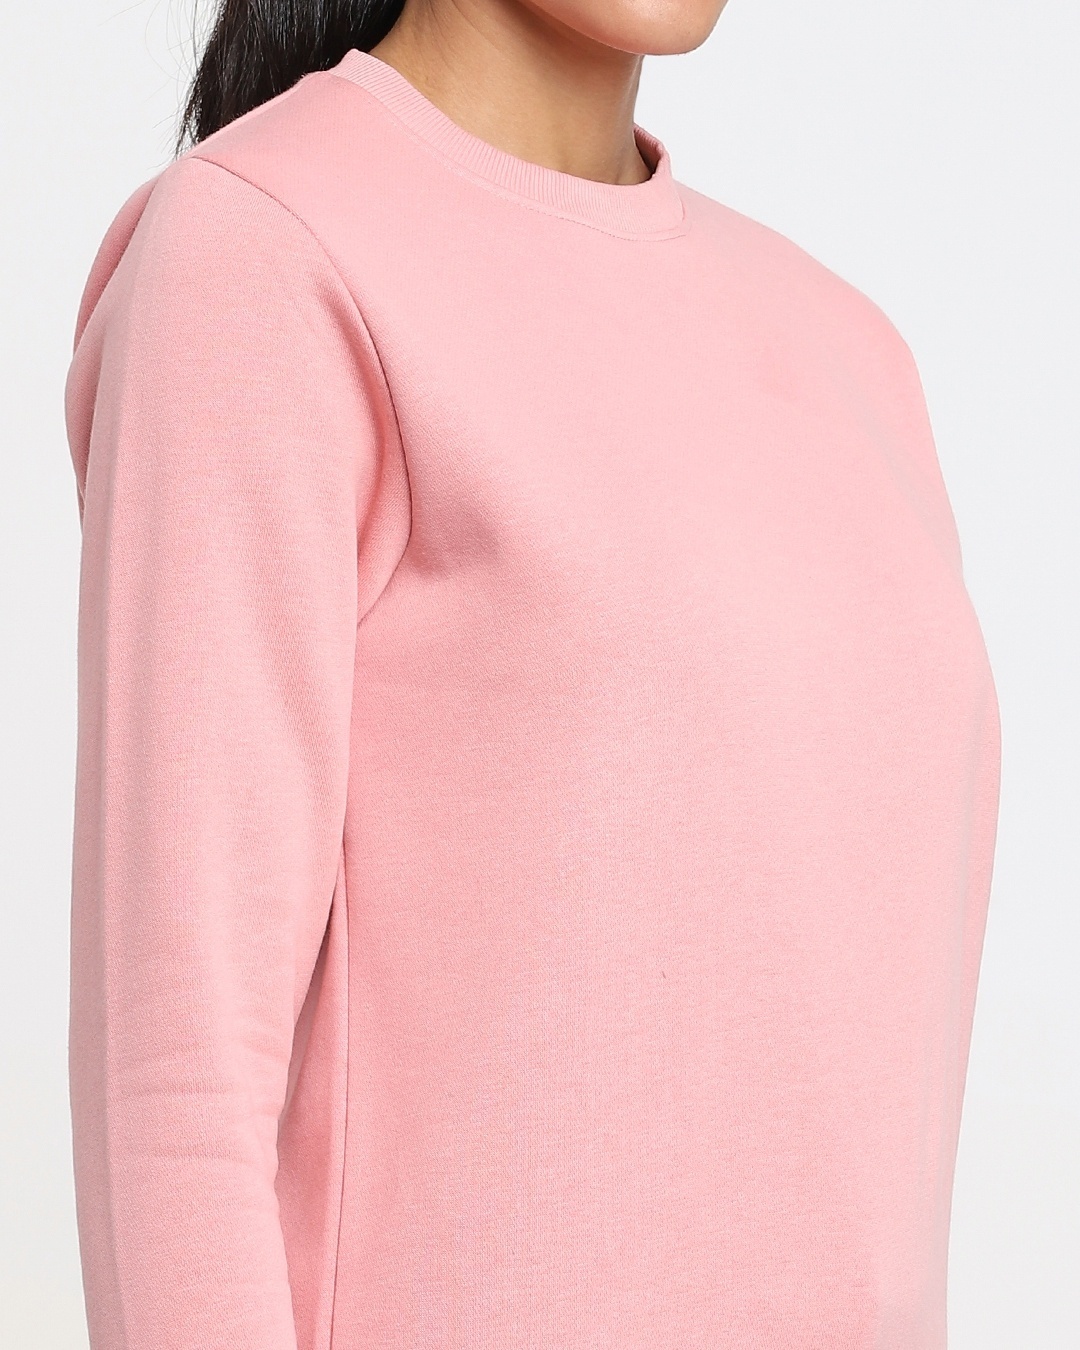 Shop Women's Solid Pink Sweatshirt